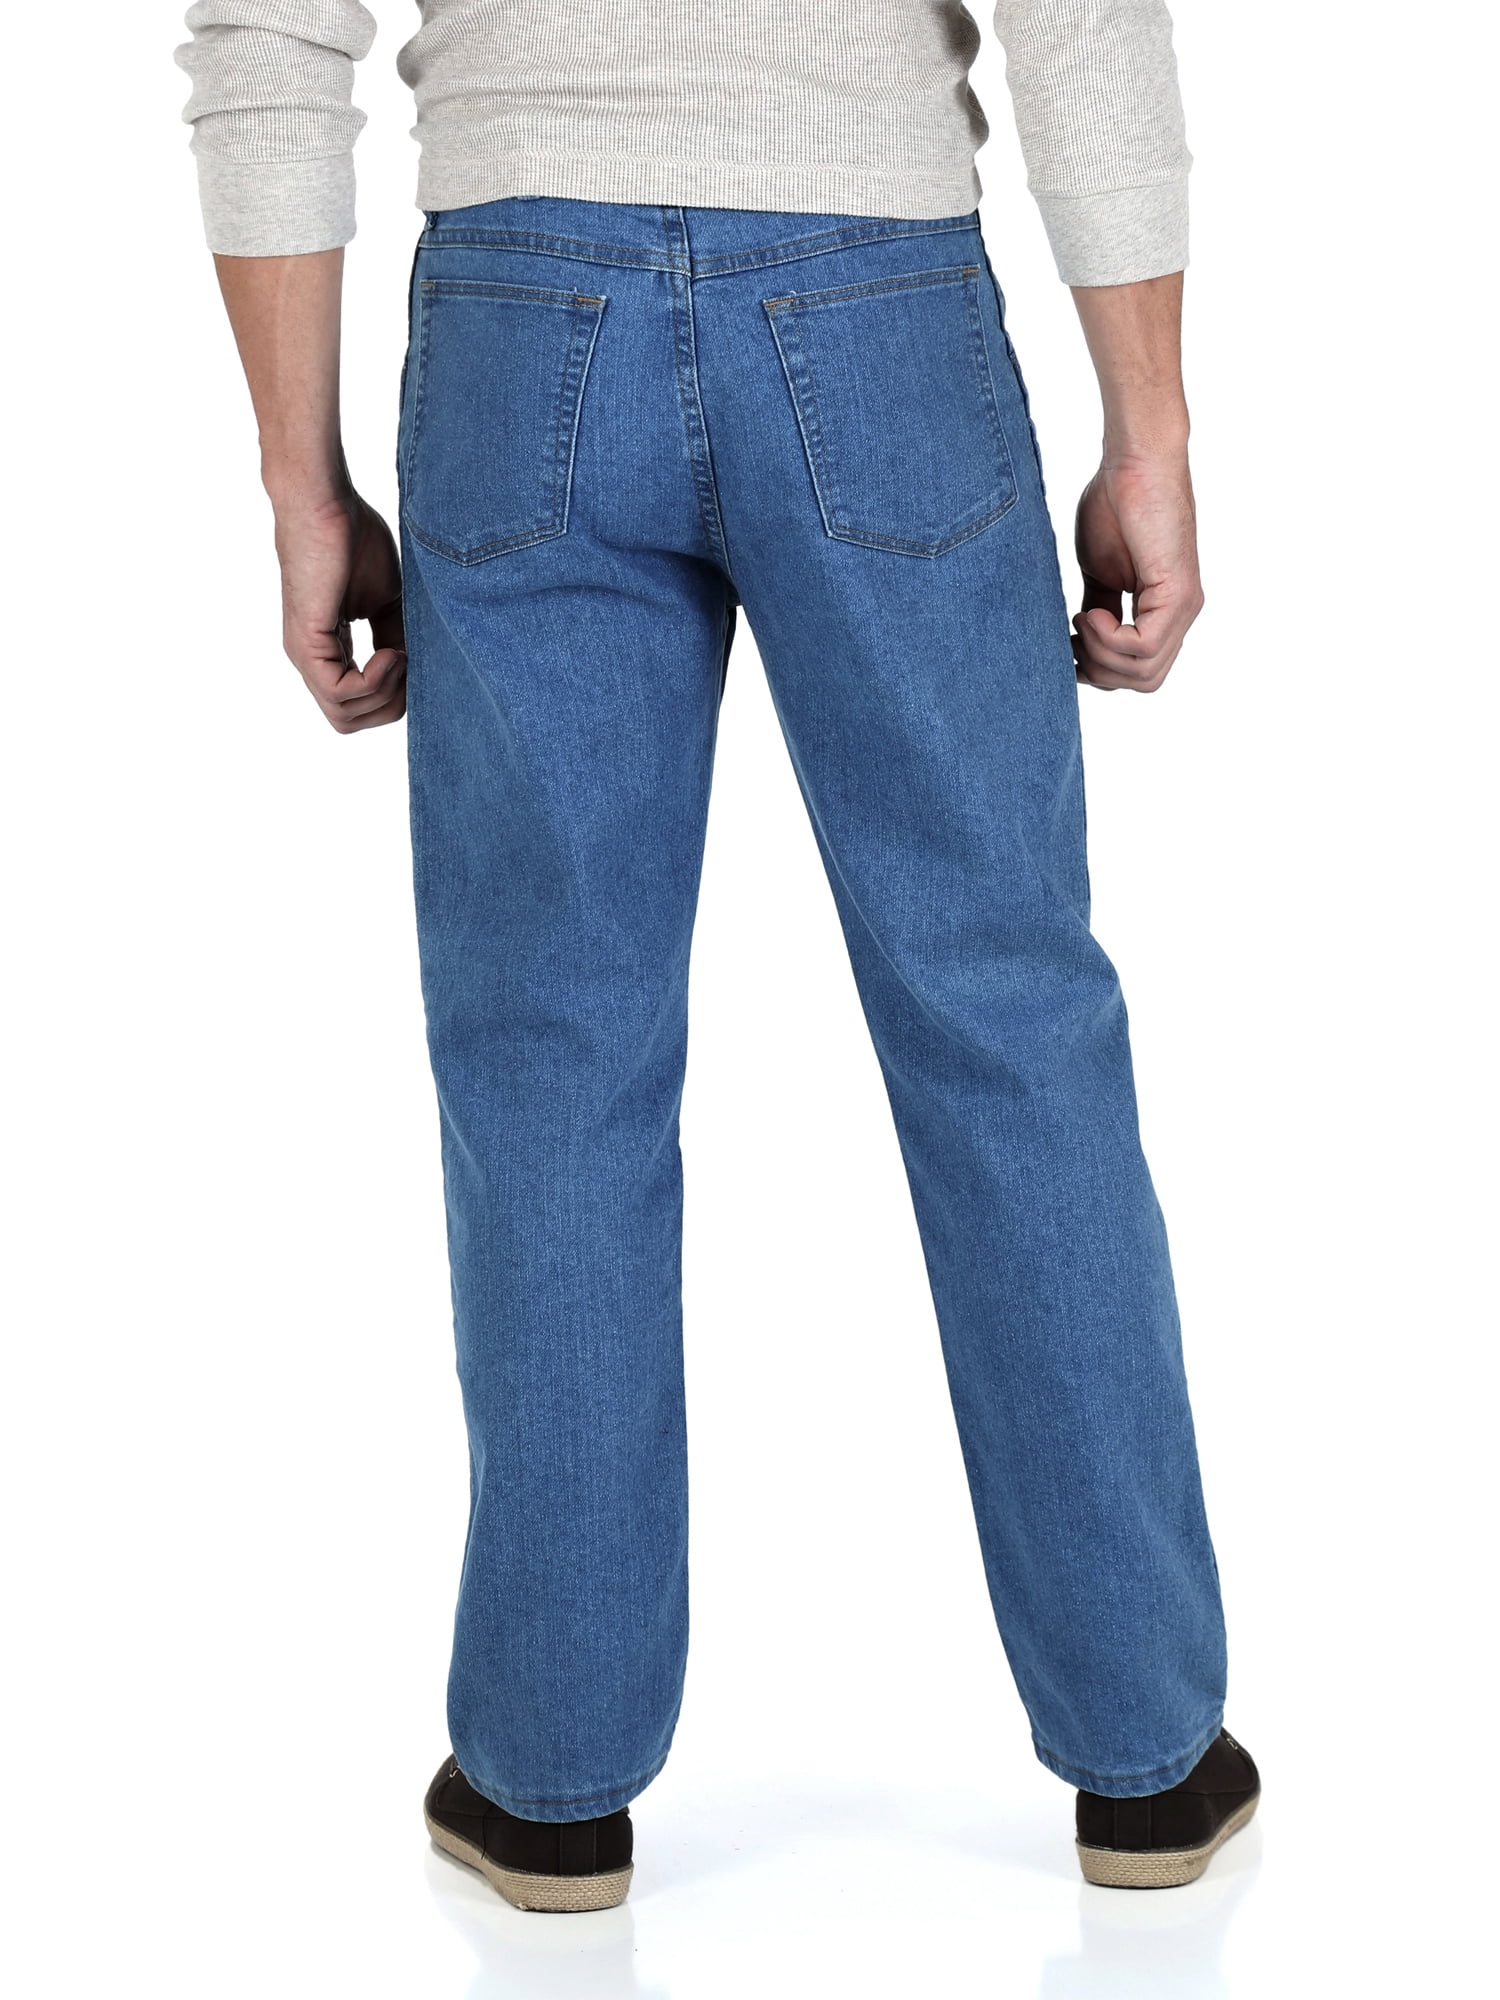 wrangler stretch jeans walmart